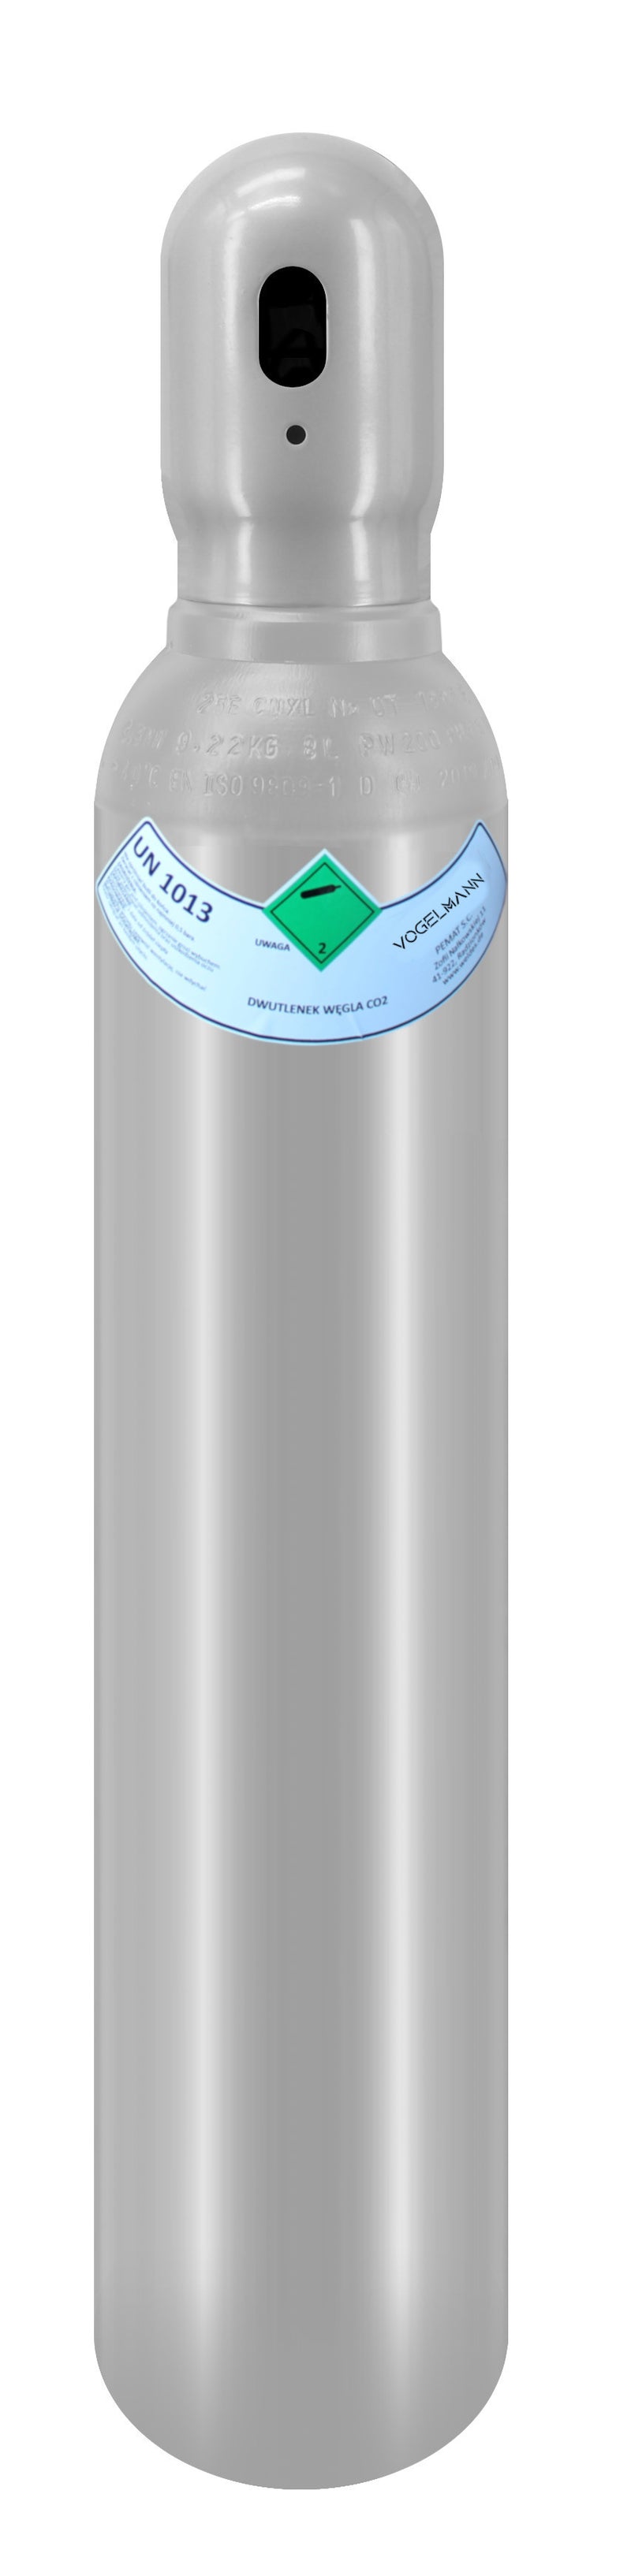 Argón 4.8 cilindro de gas completo 8L 1,5m3